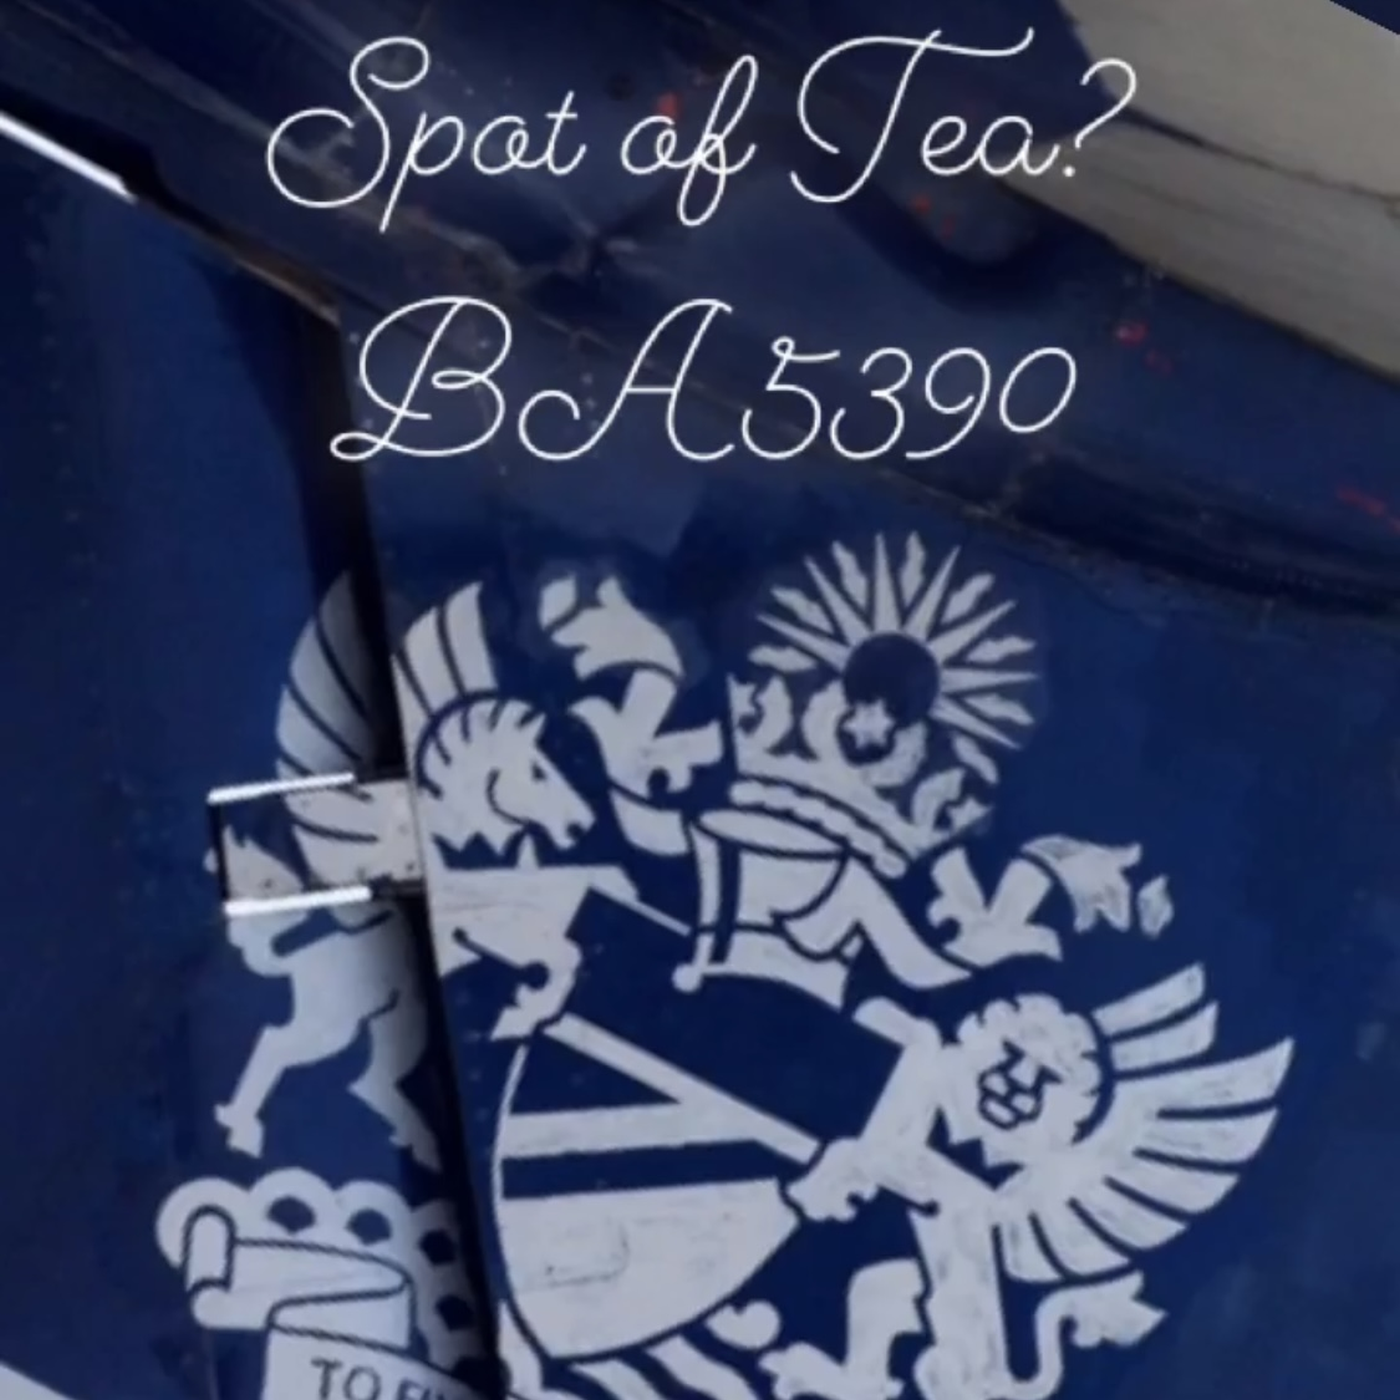 23. Spot of Tea - British Airways 5390